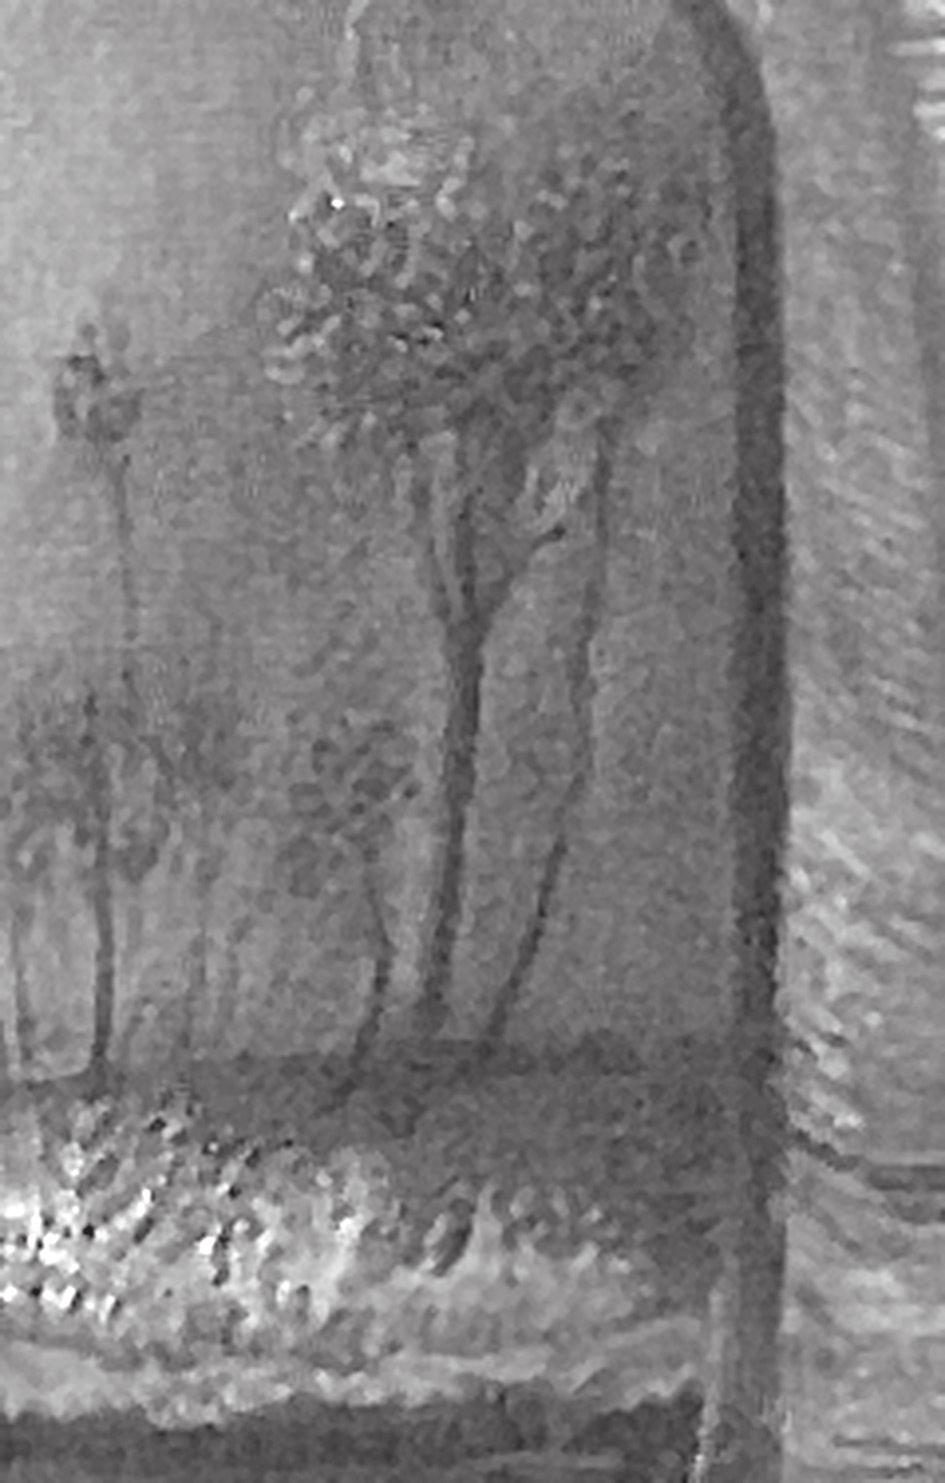 2. Részlet A taorminai görög színház romjai (1904 1905) című festményről tapasztalati, szubjektíve motivált téralakításhoz, feladta az egy nézőpont szigorát, azaz a szabatos szerkesztés kulcspontját.